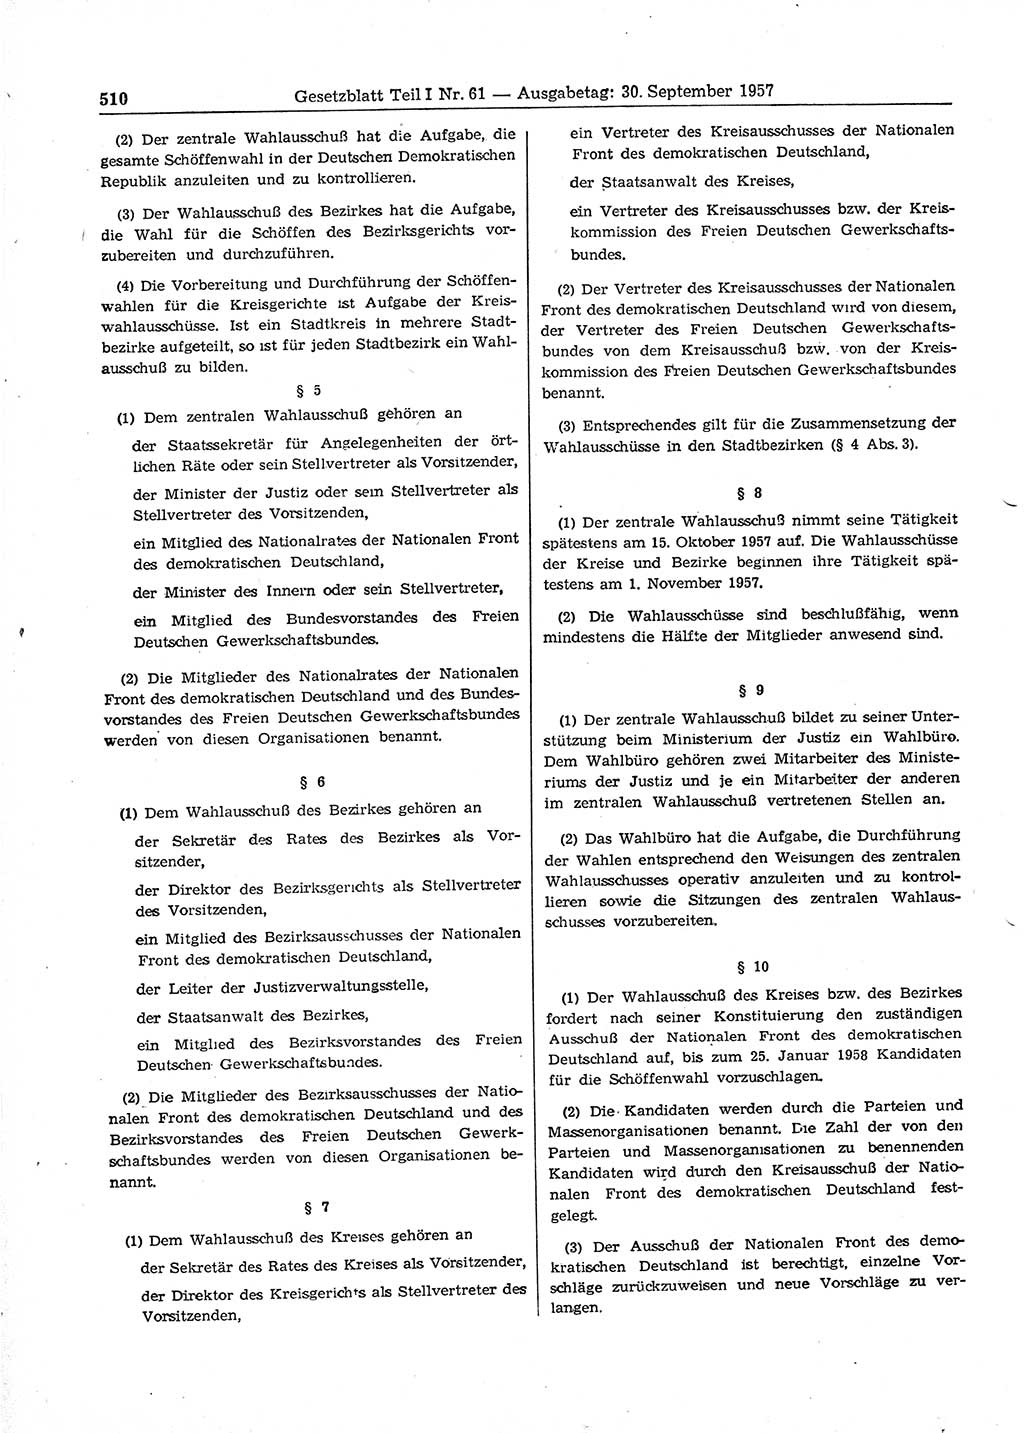 Gesetzblatt (GBl.) der Deutschen Demokratischen Republik (DDR) Teil Ⅰ 1957, Seite 510 (GBl. DDR Ⅰ 1957, S. 510)